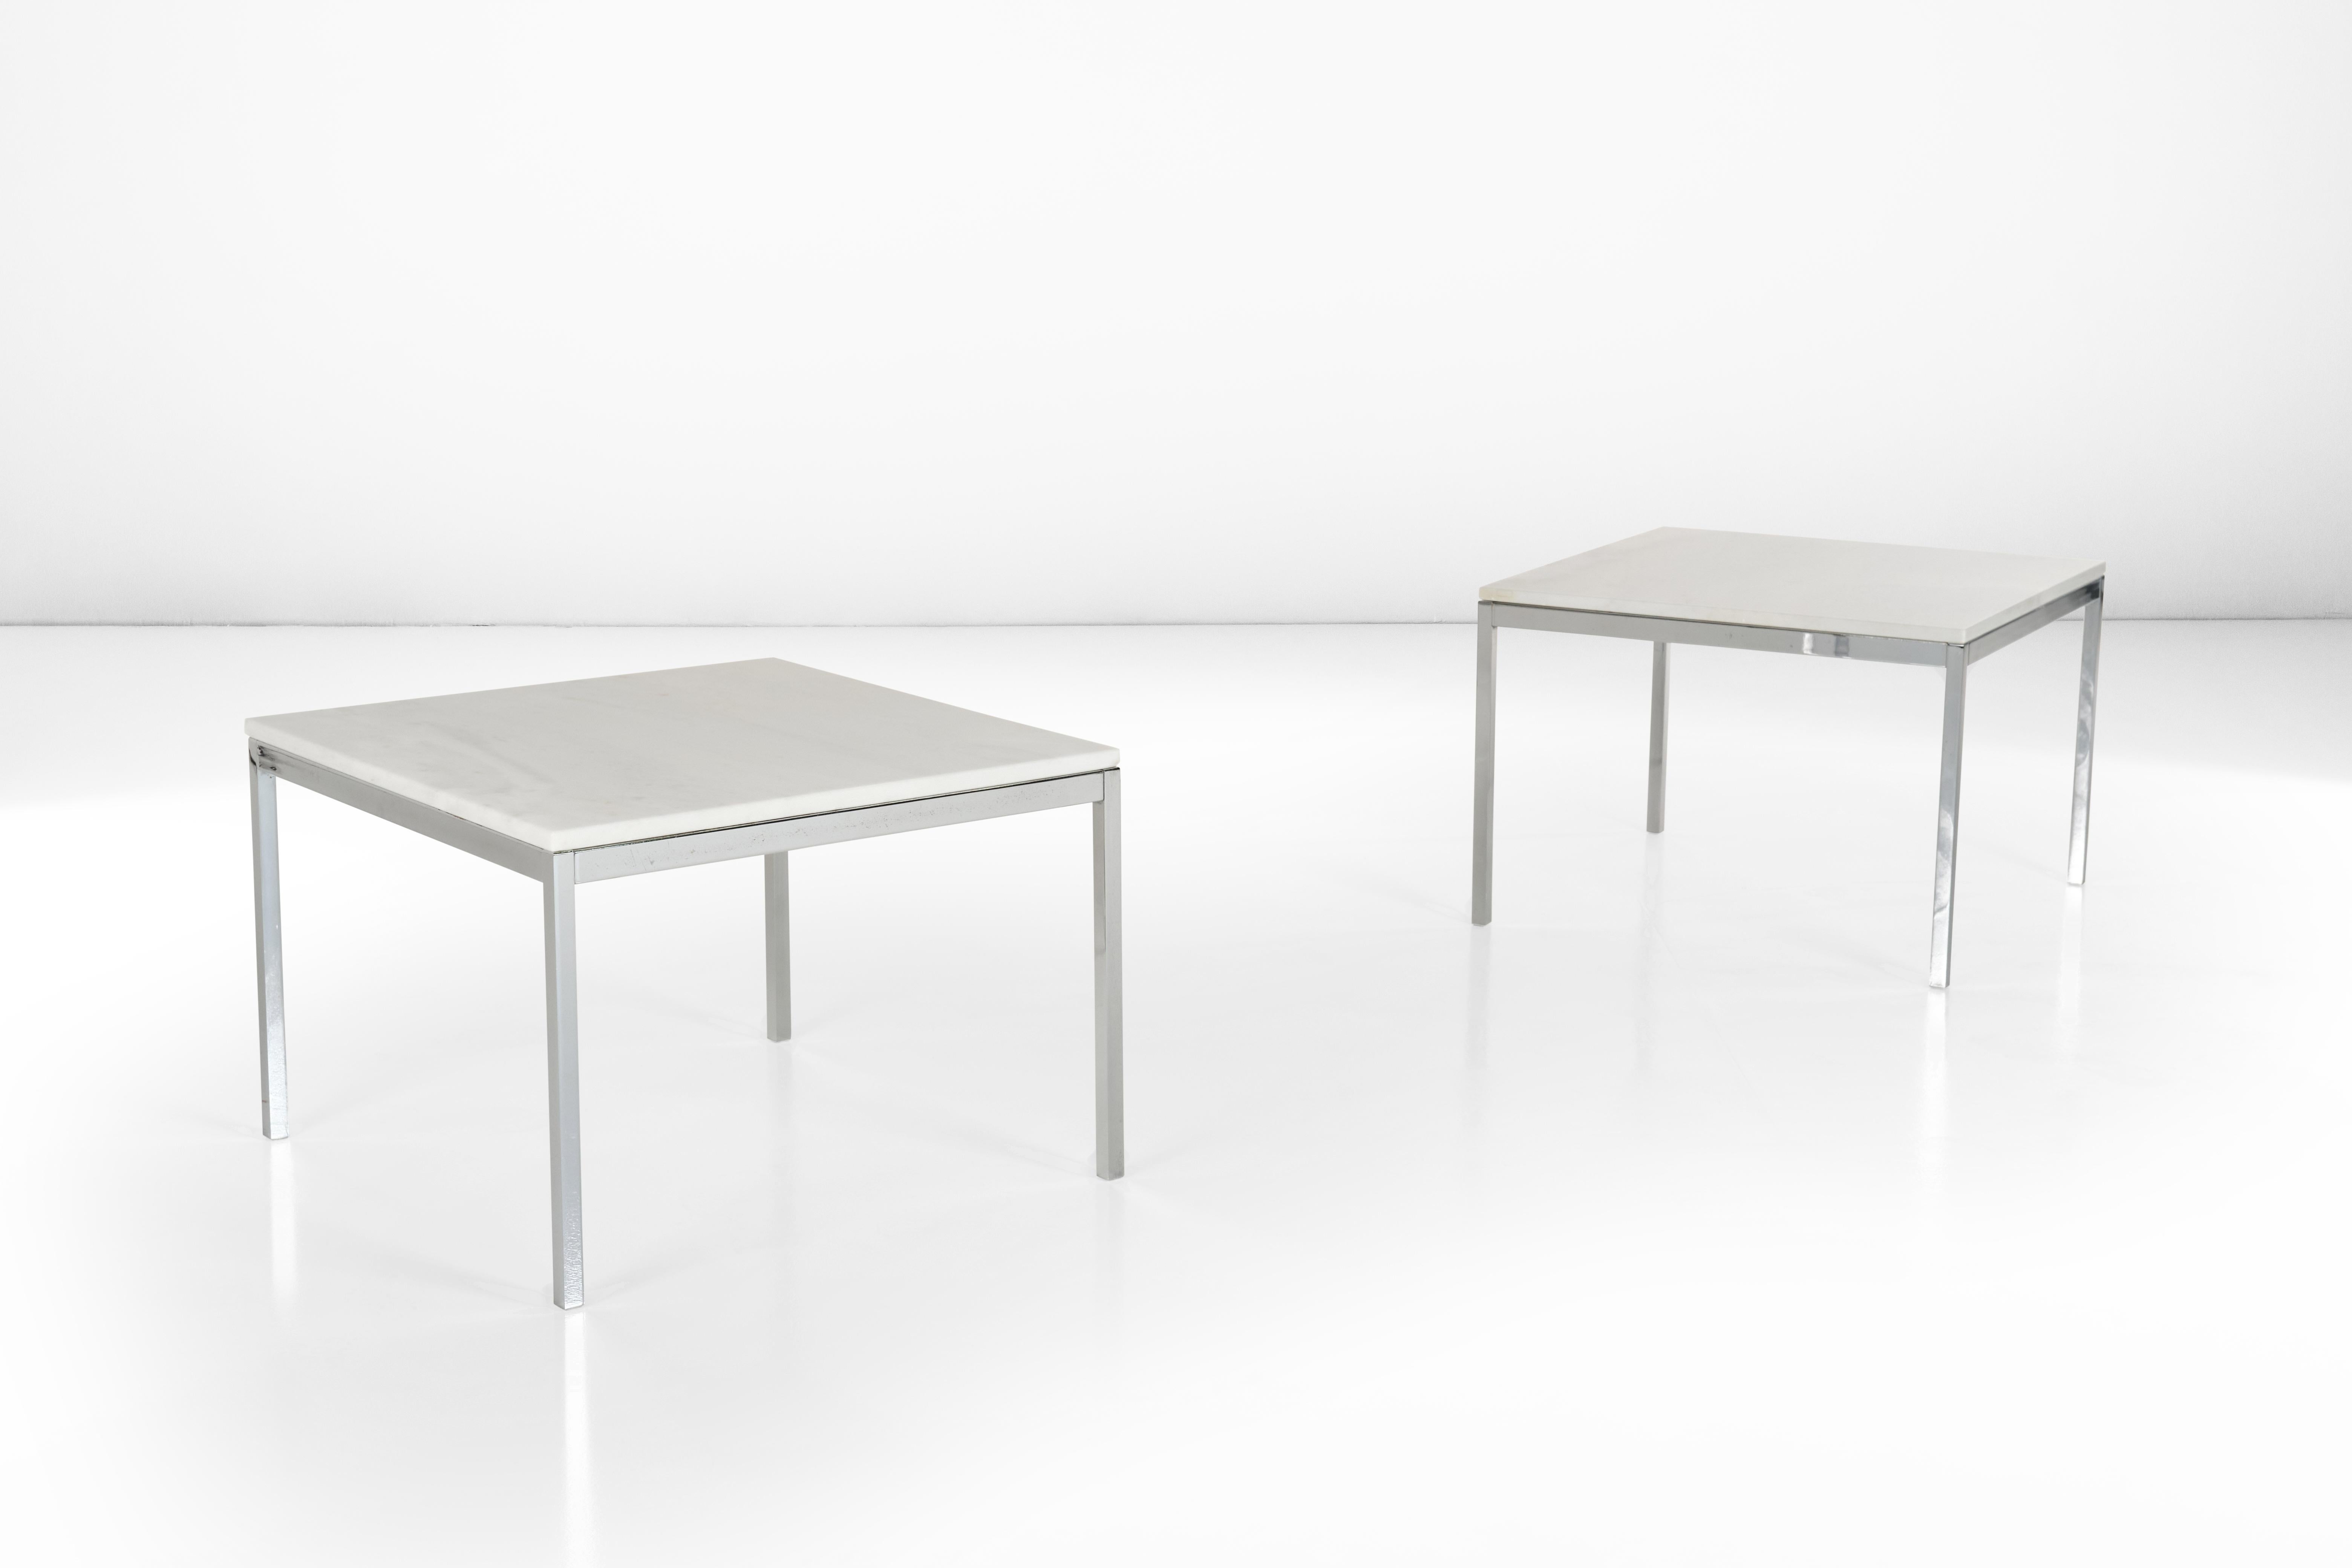 Dieses Set aus zwei niedrigen Tischen mit Stahlstruktur und weißer Marmorplatte ist ein Zeugnis des Designeinflusses von Florence Knoll und der Verbreitung, die dieser in Italien, dem Ursprungsort dieses Sets, hatte. Wie alle seine Entwürfe hat der